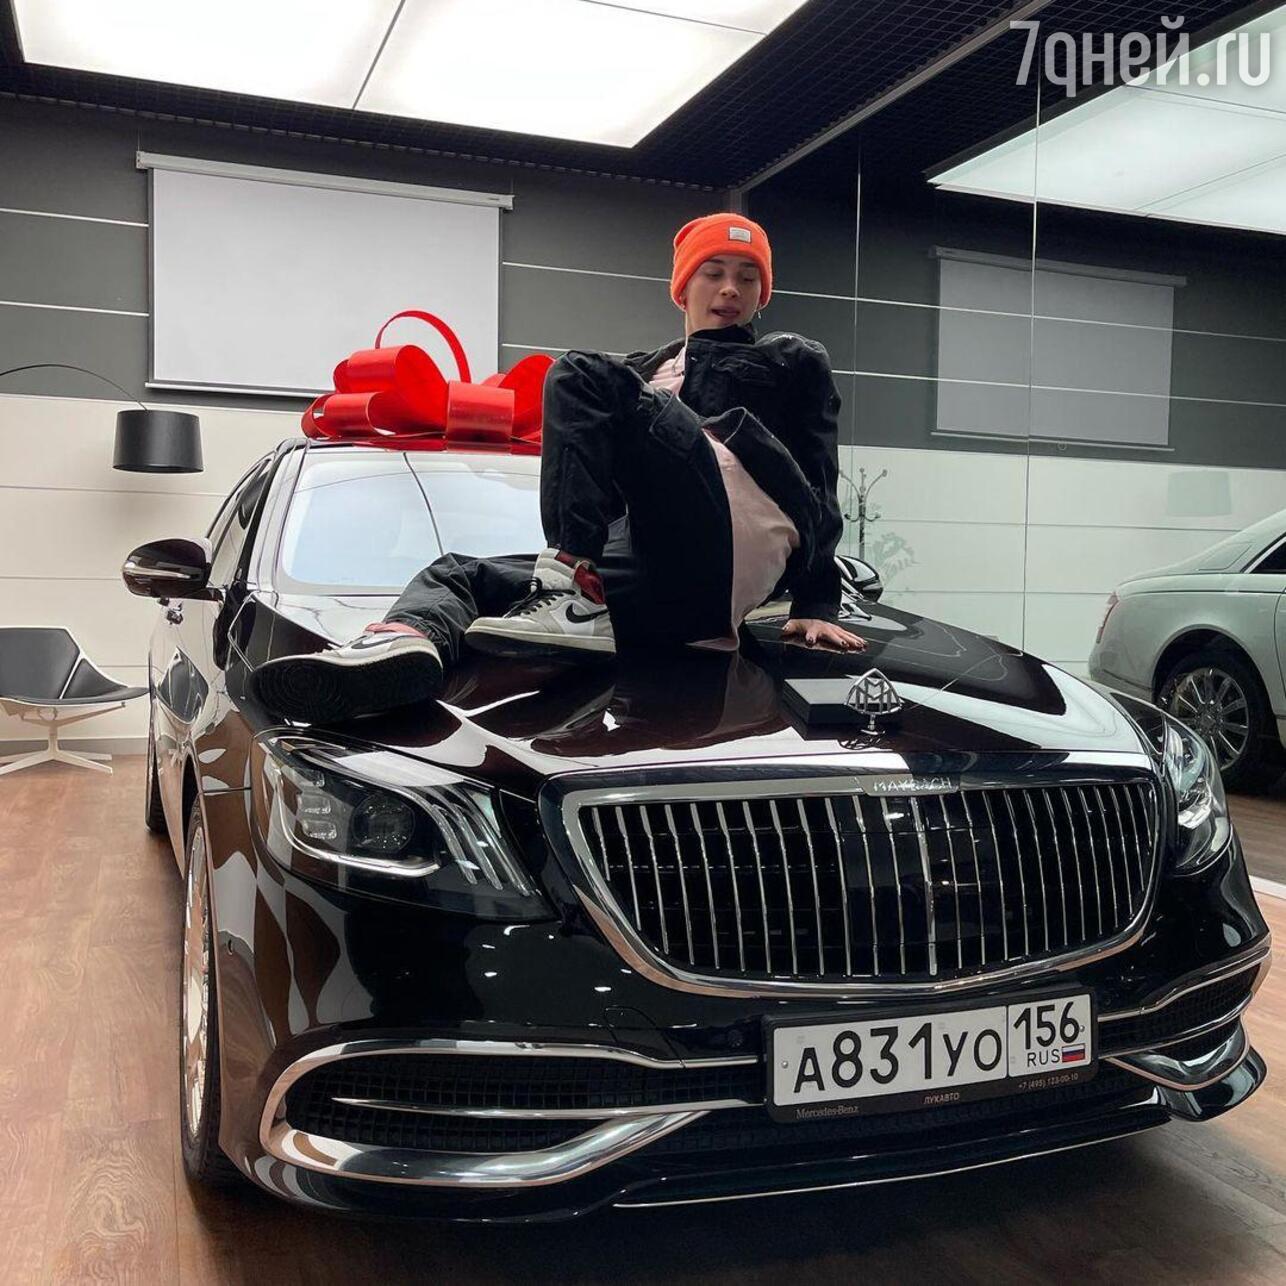 Автомобили от 10 миллионов рублей. Машина Дани Милохина 2021. Машина Дани Милохина Майбах.